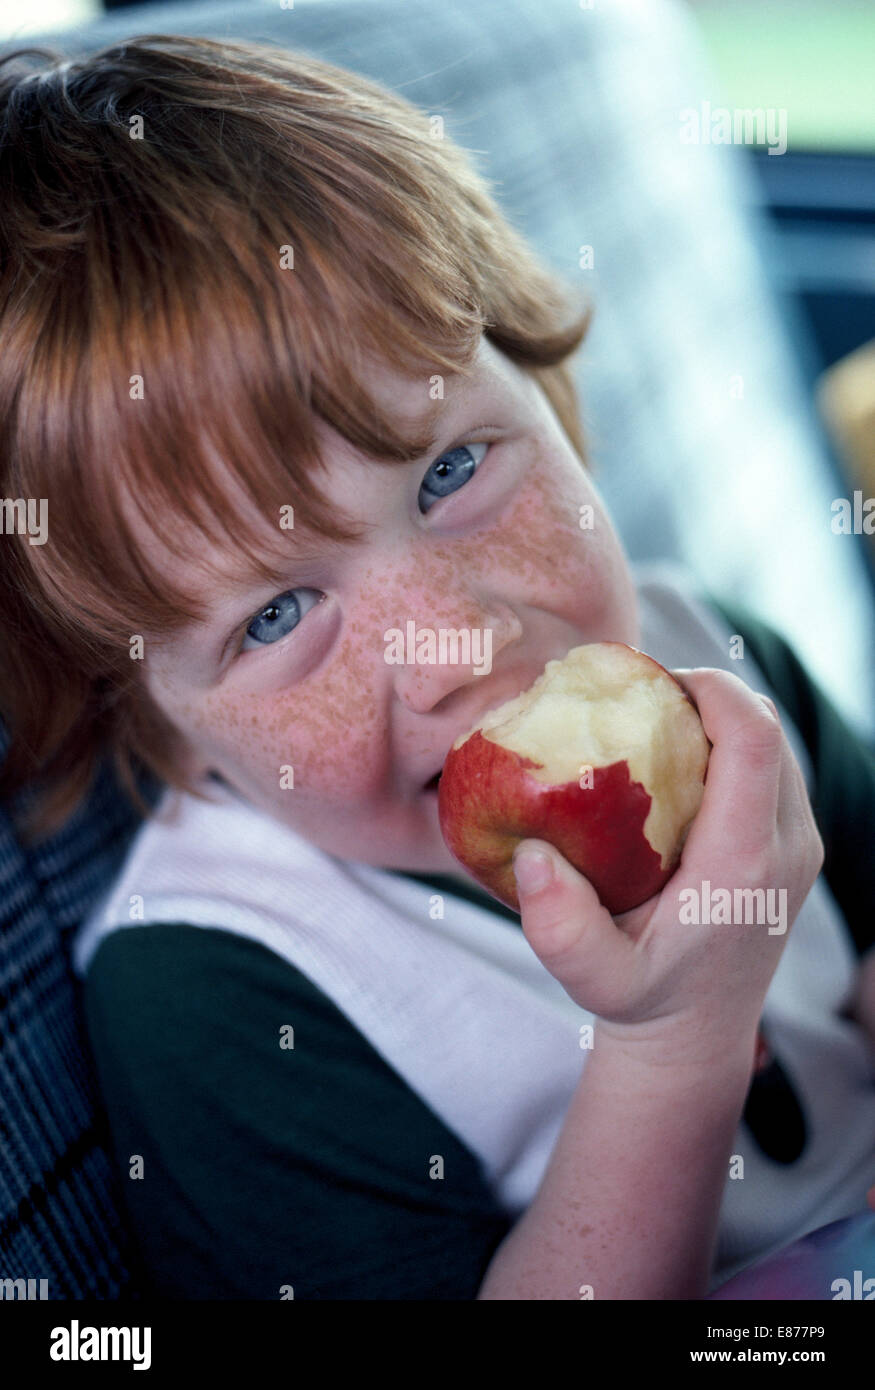 Ein vier-jährige amerikanische junge mit roten Haaren, blauen Augen und ein sommersprossiges Gesicht genießt in diesem informellen Porträt einen Apfel essen. Stockfoto